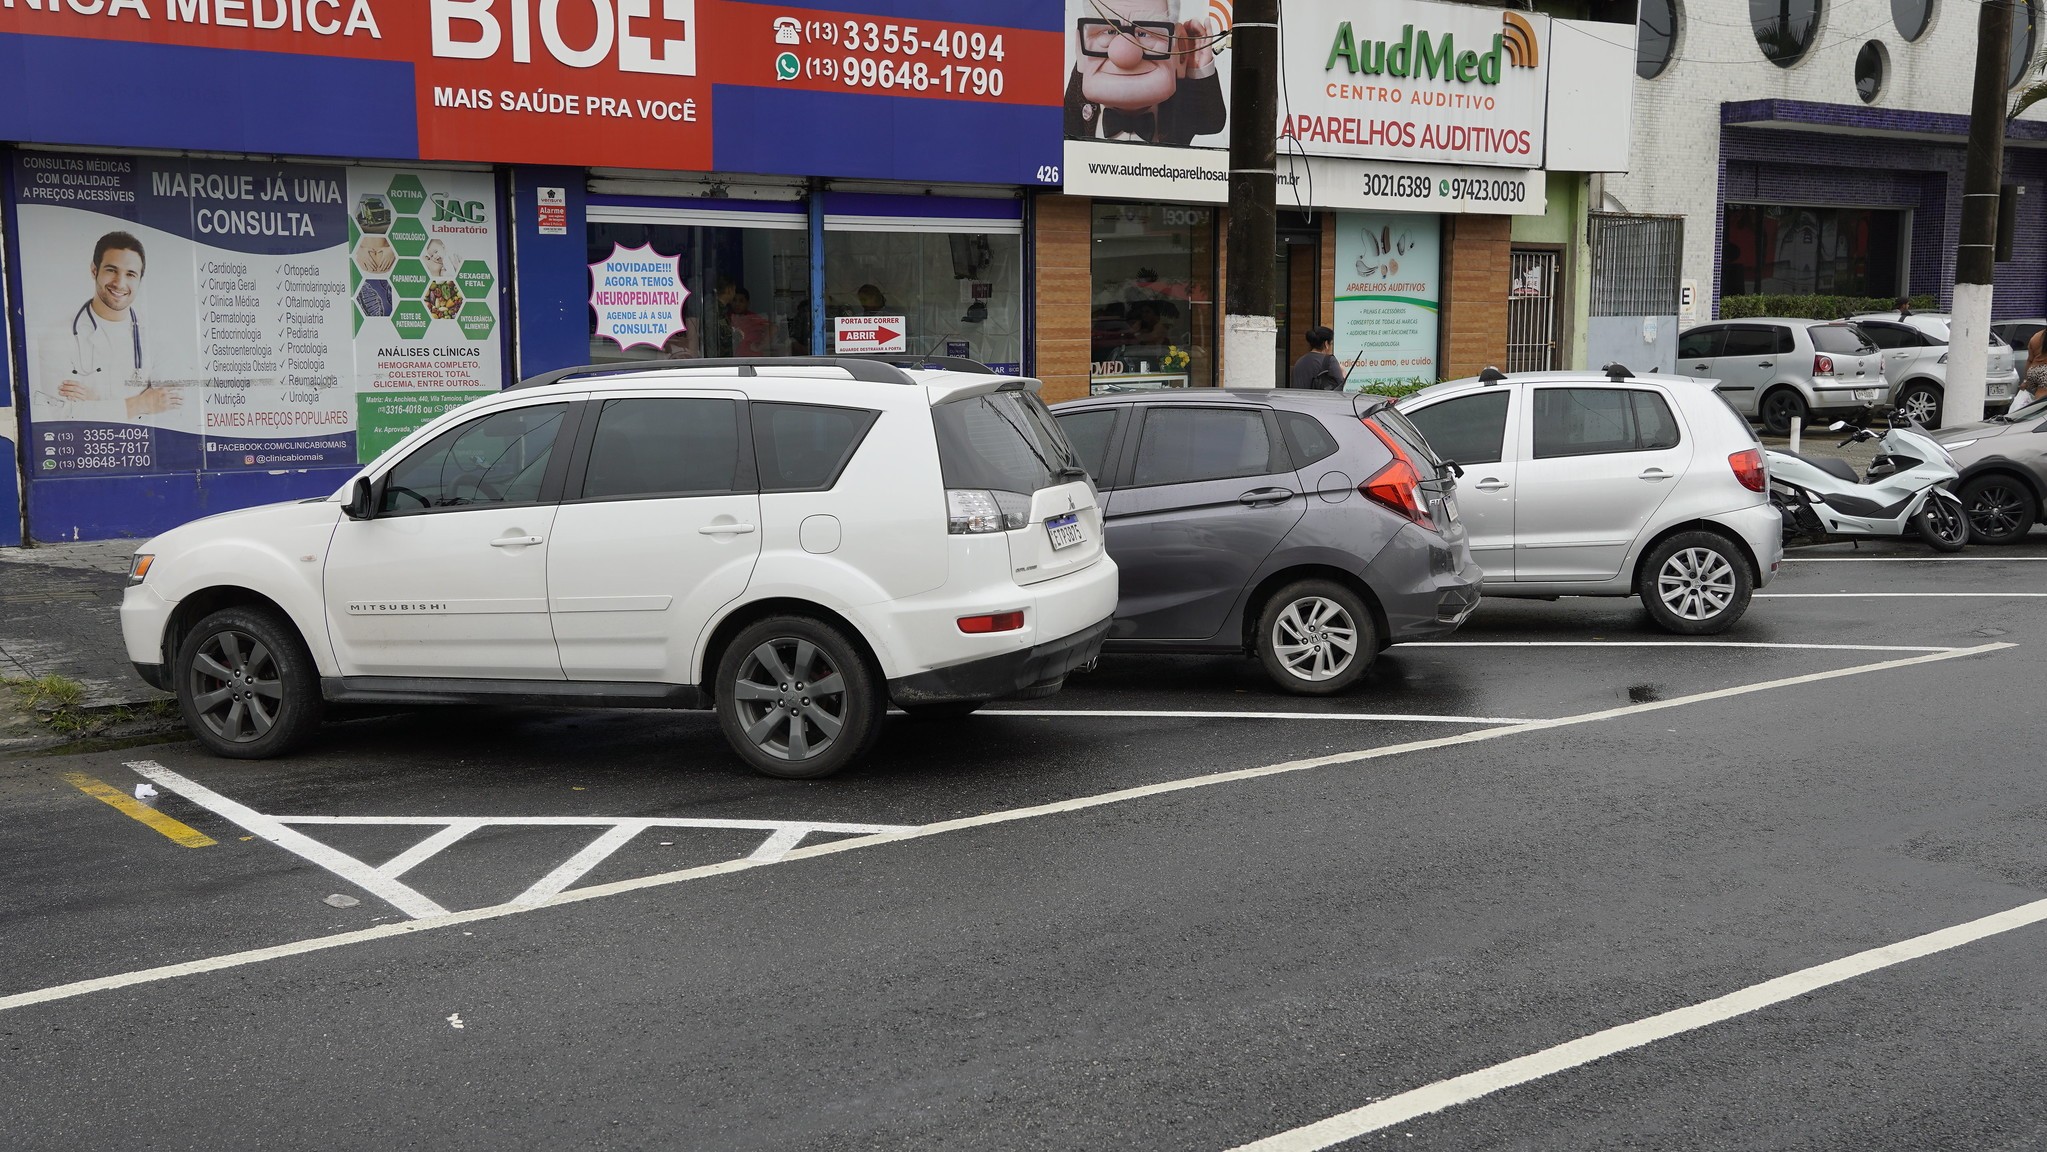 Área comercial de Vicente de Carvalho tem mudanças e novas regras de estacionamento